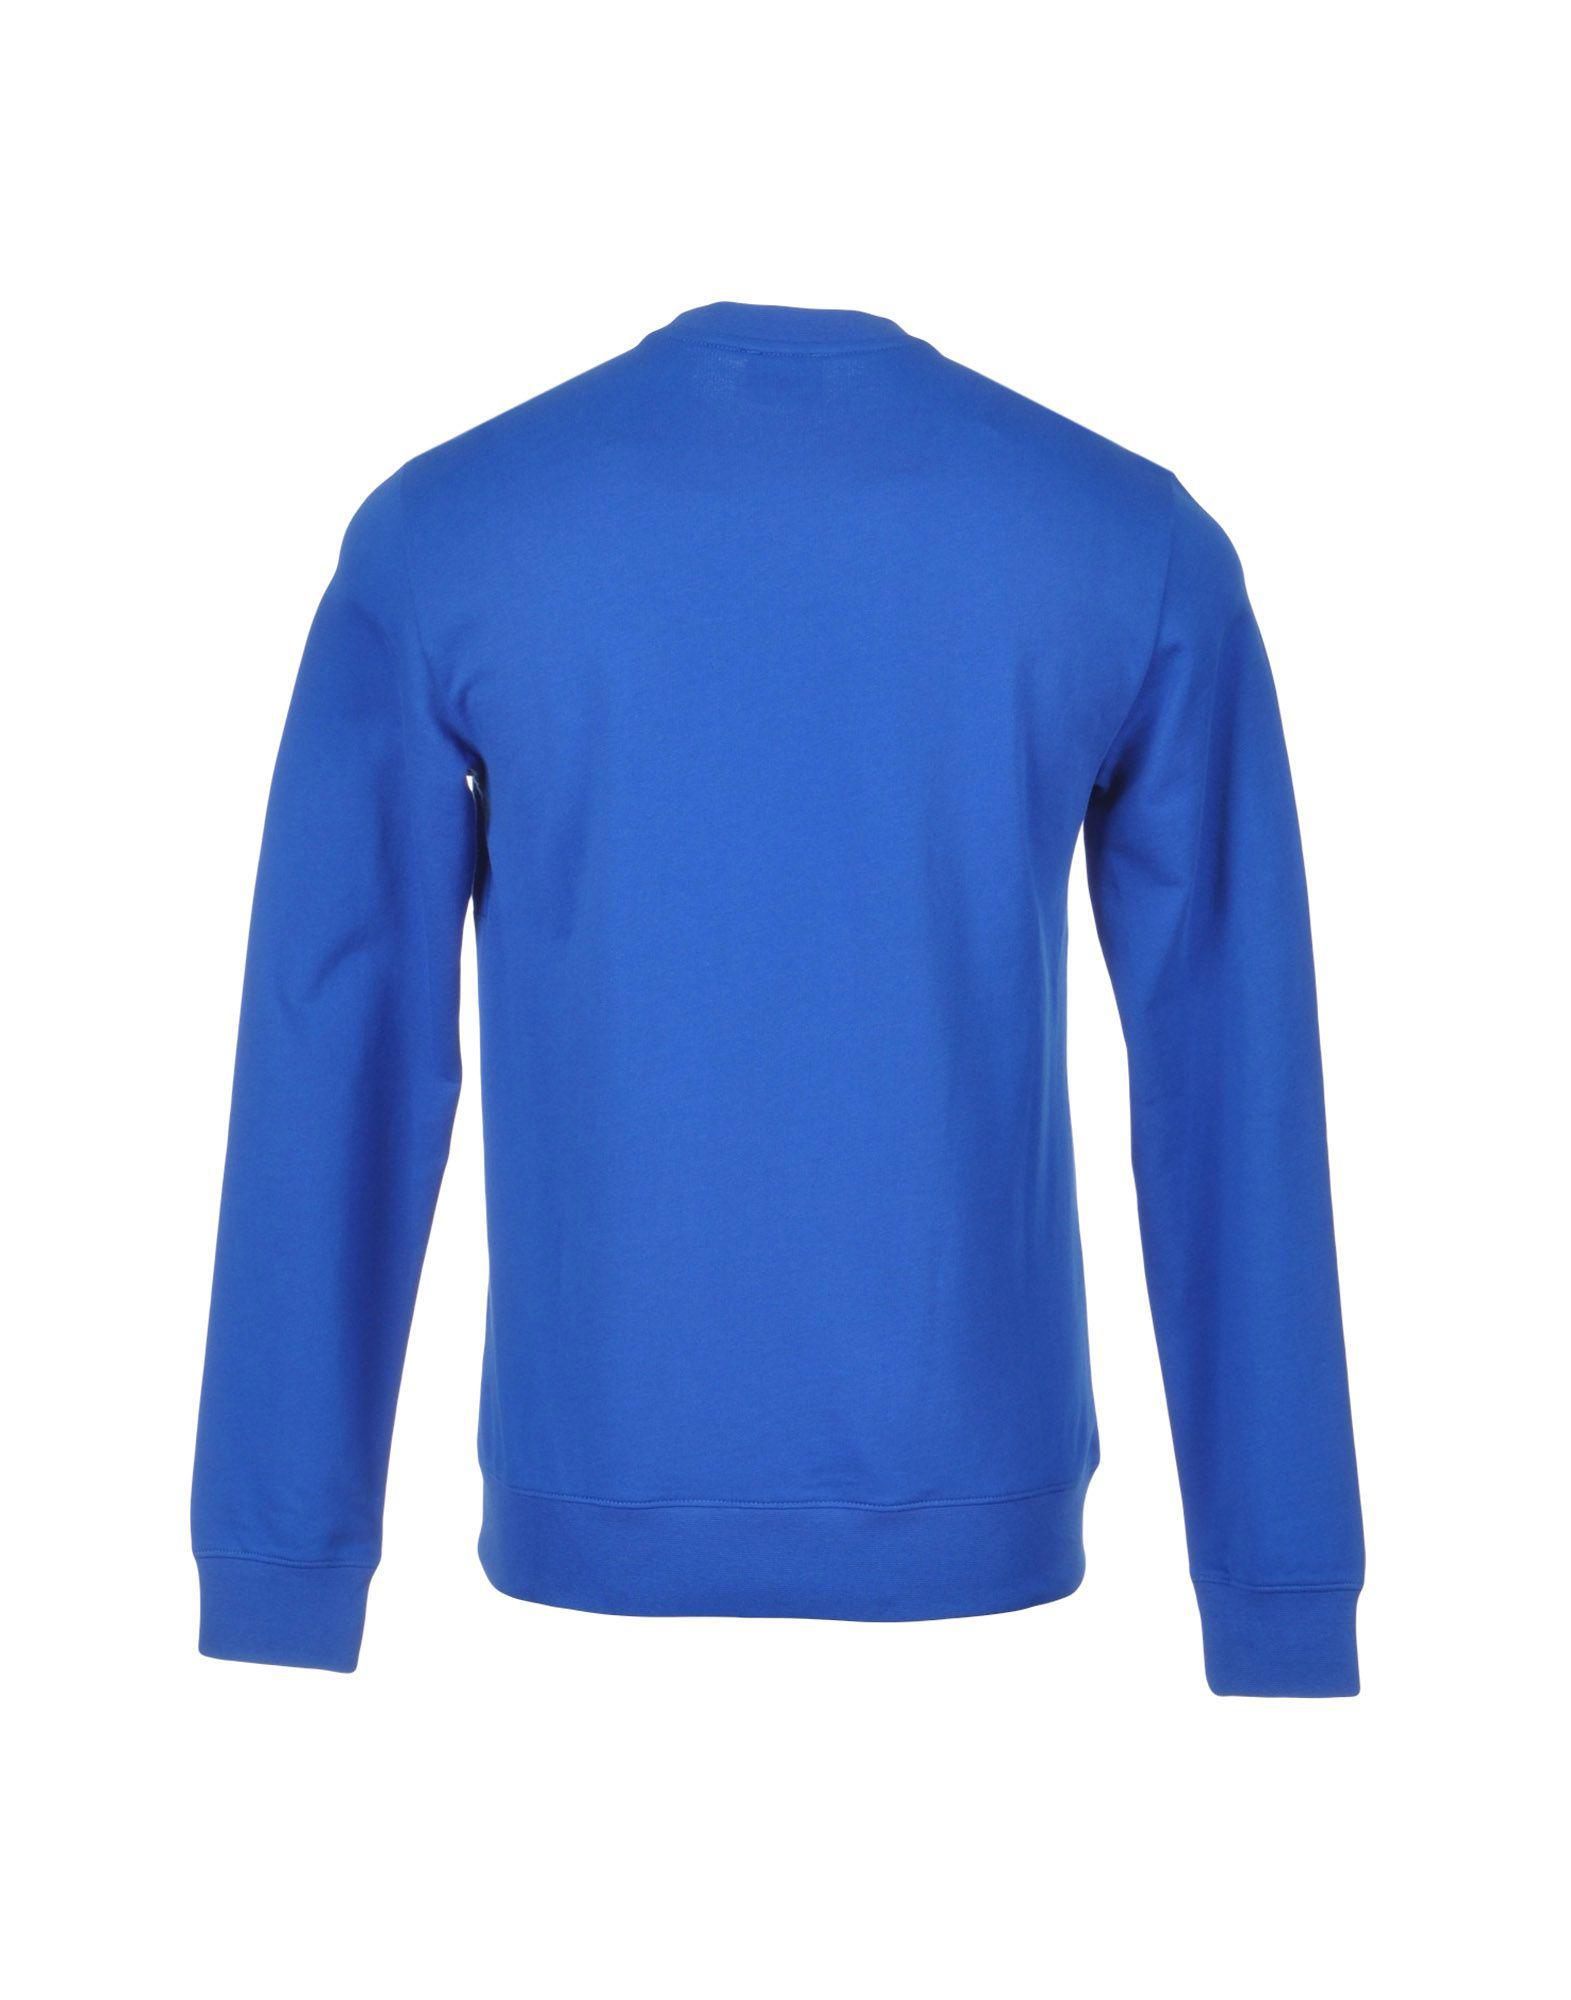 ea7 blue sweatshirt